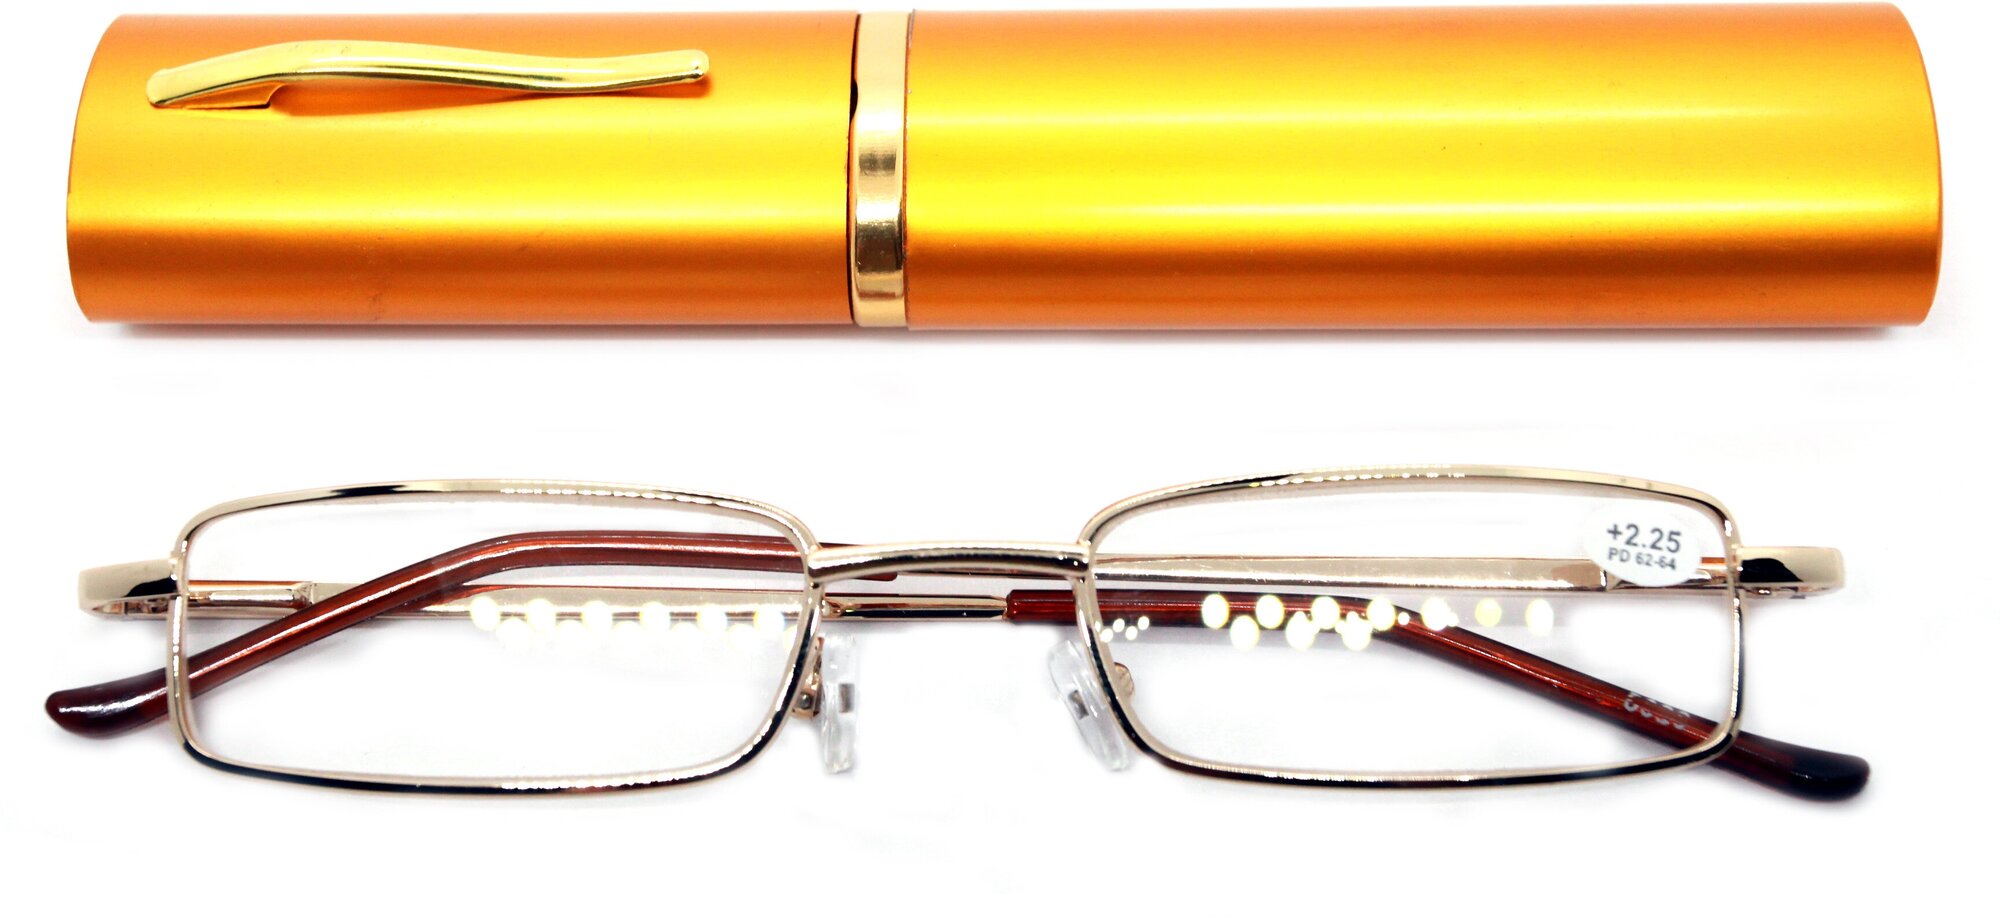 Очки-ручка для чтения (+3.50) узкая, с металлическим футляром, цвет золотой, РЦ 62-64